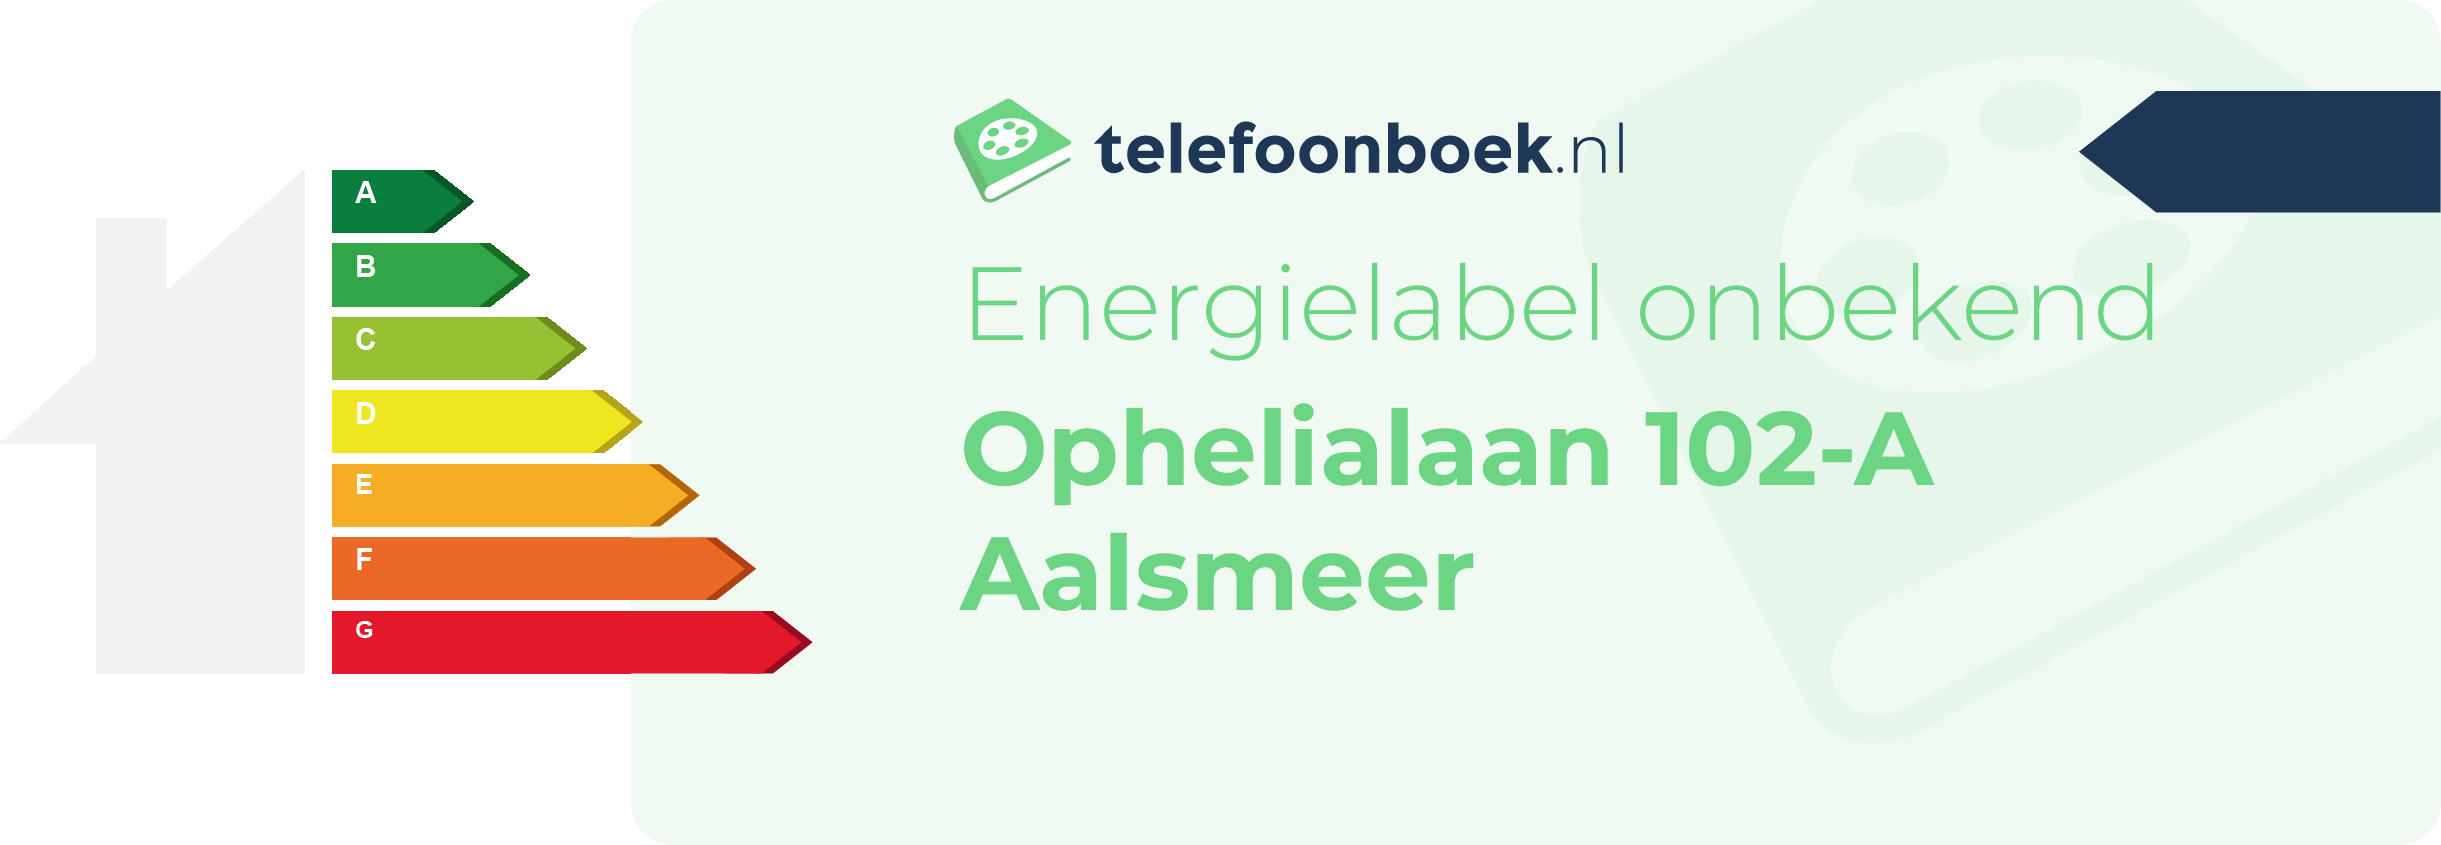 Energielabel Ophelialaan 102-A Aalsmeer